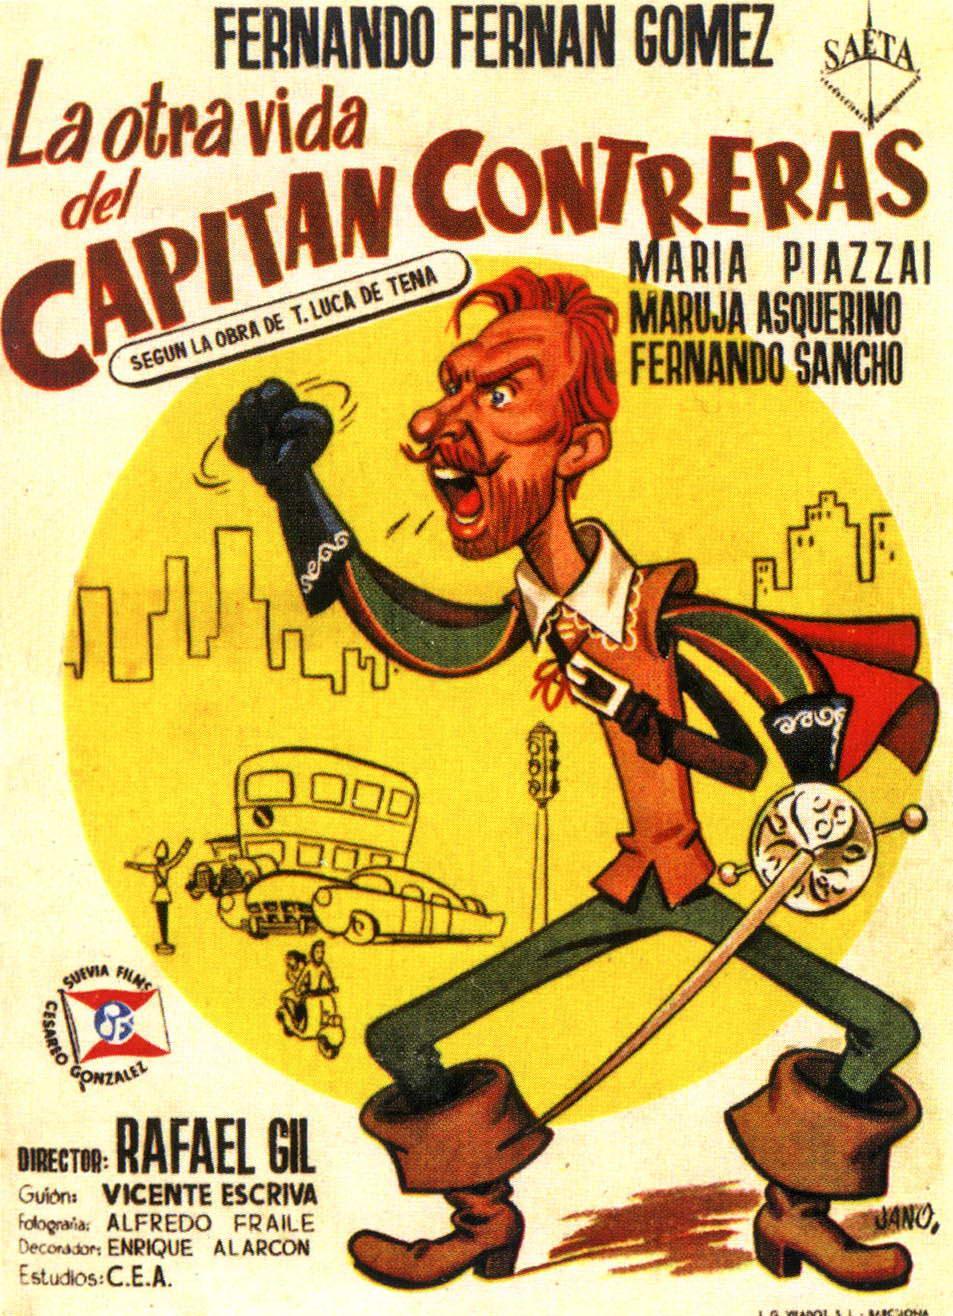 Постер фильма otra vida del capitán Contreras